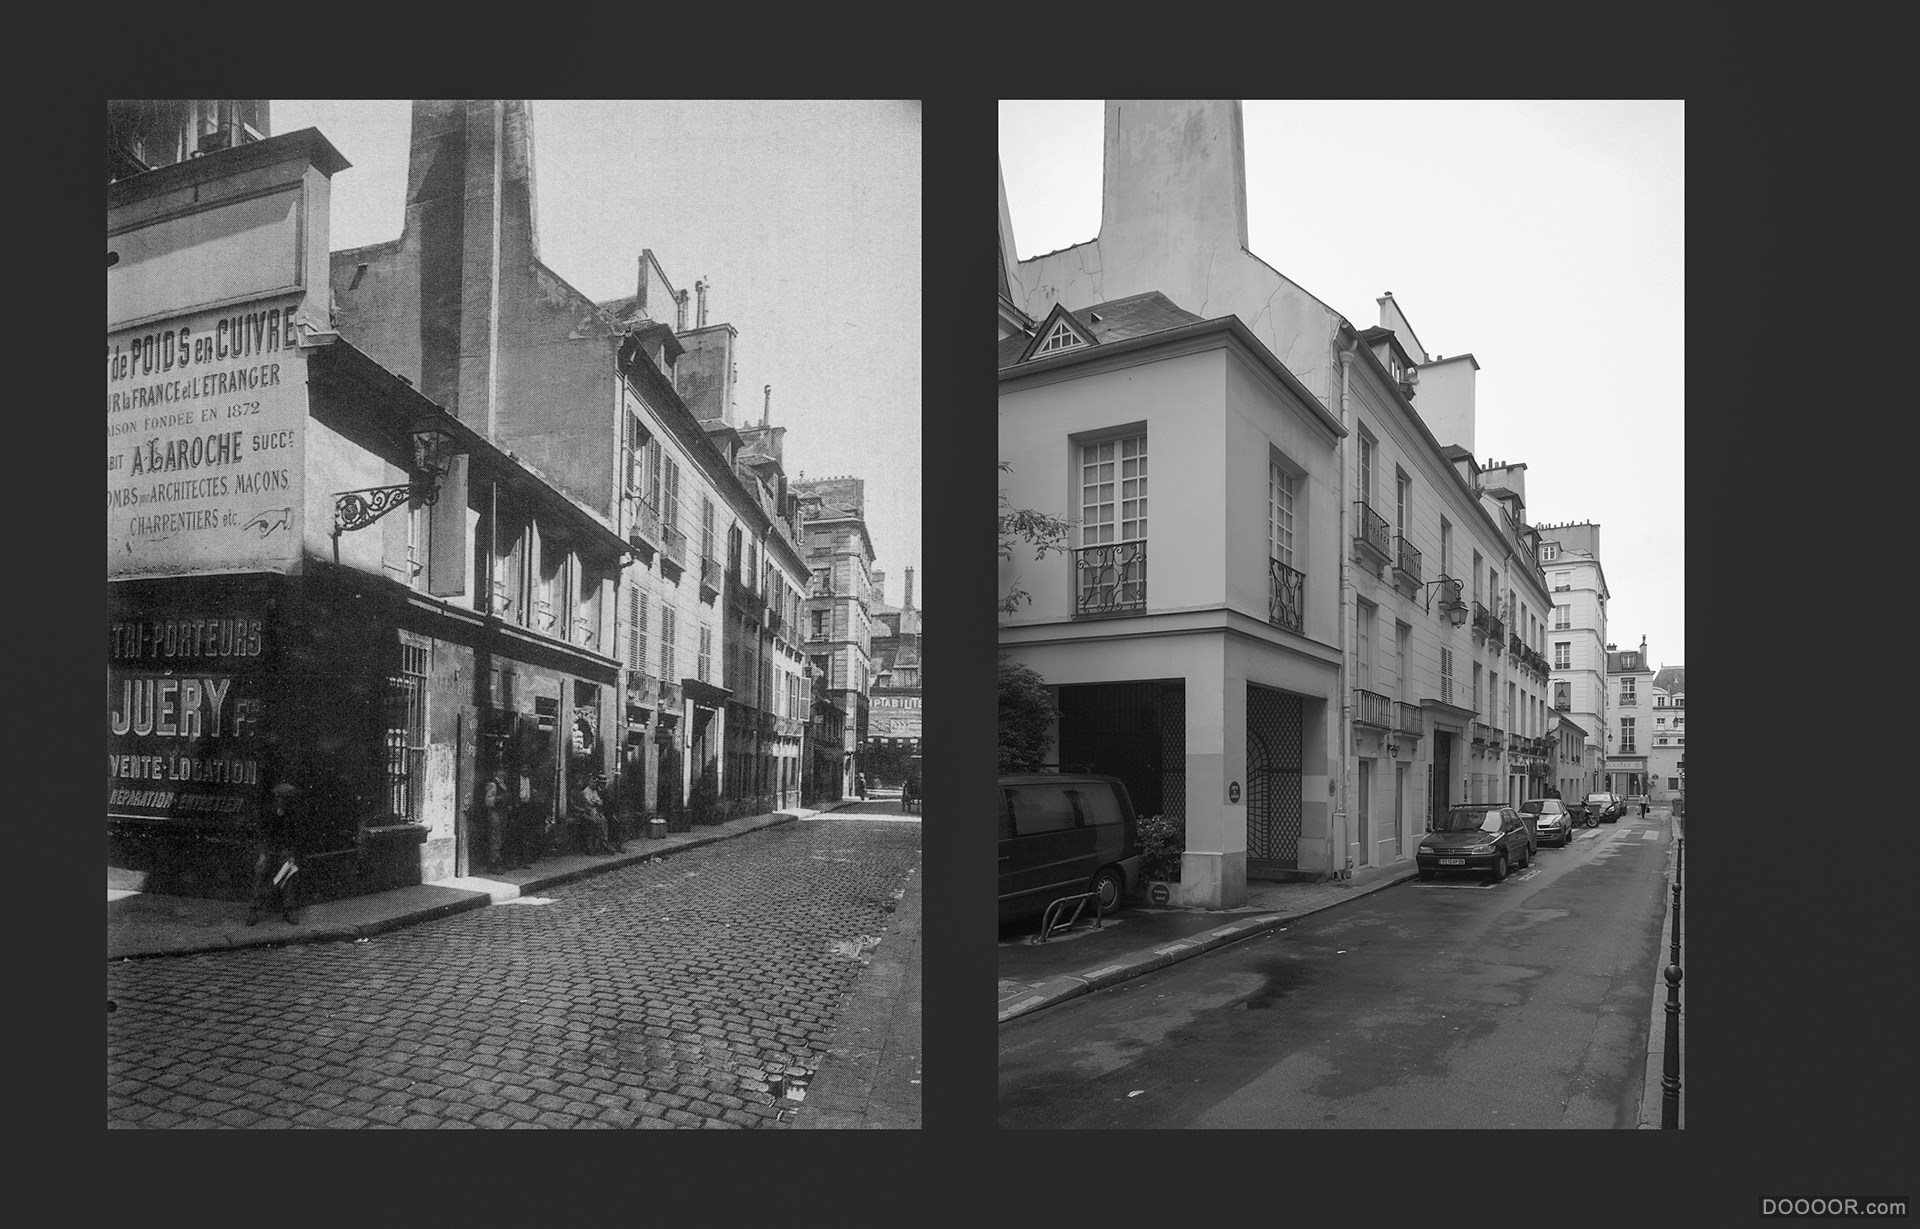 过去与现在-巴黎街头照片对比 [50P] (26).jpg